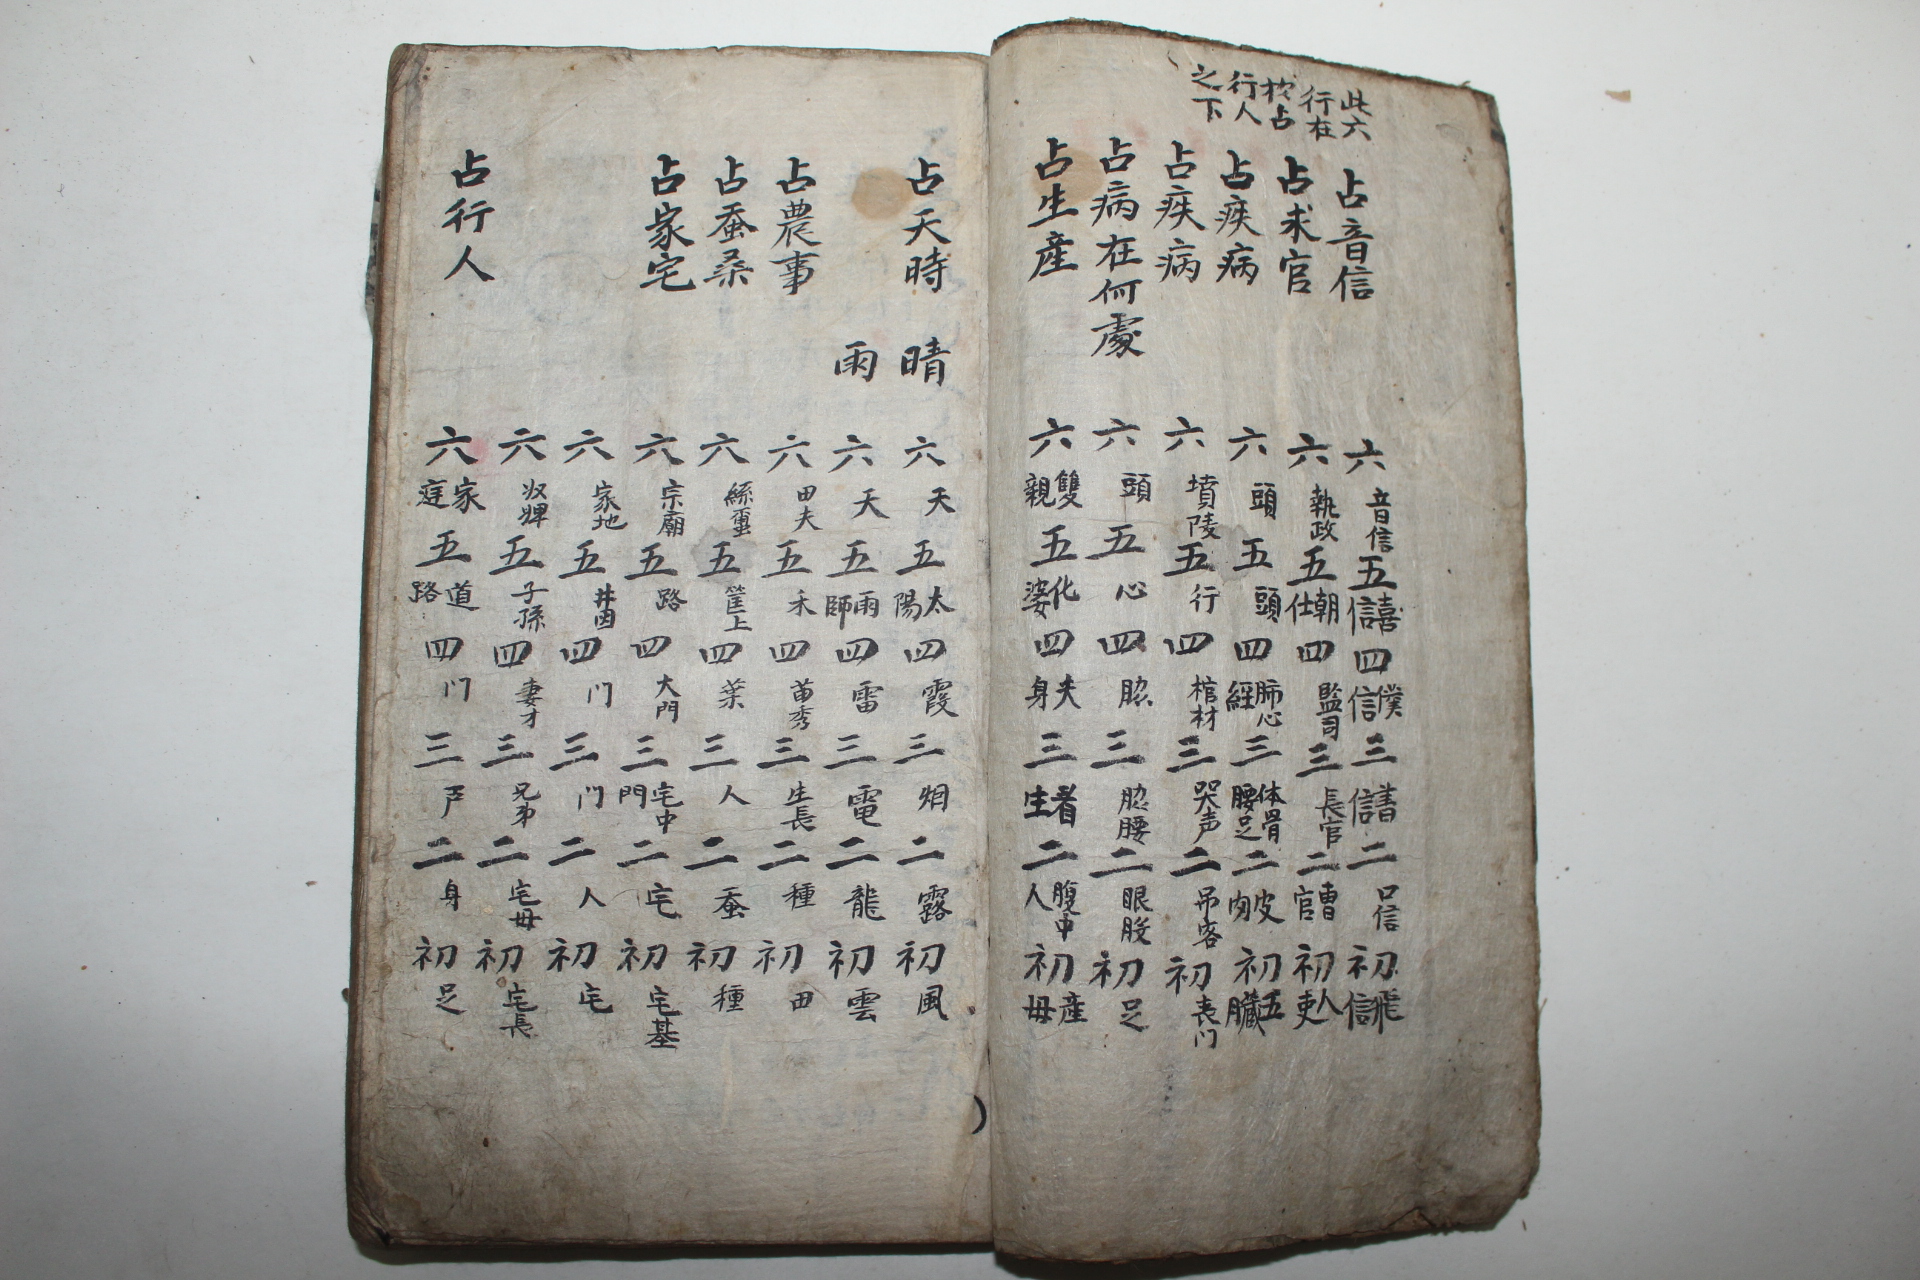 조선시대 희귀고필사본 역술,점쾌관련 세응초집(世應抄集) 1책